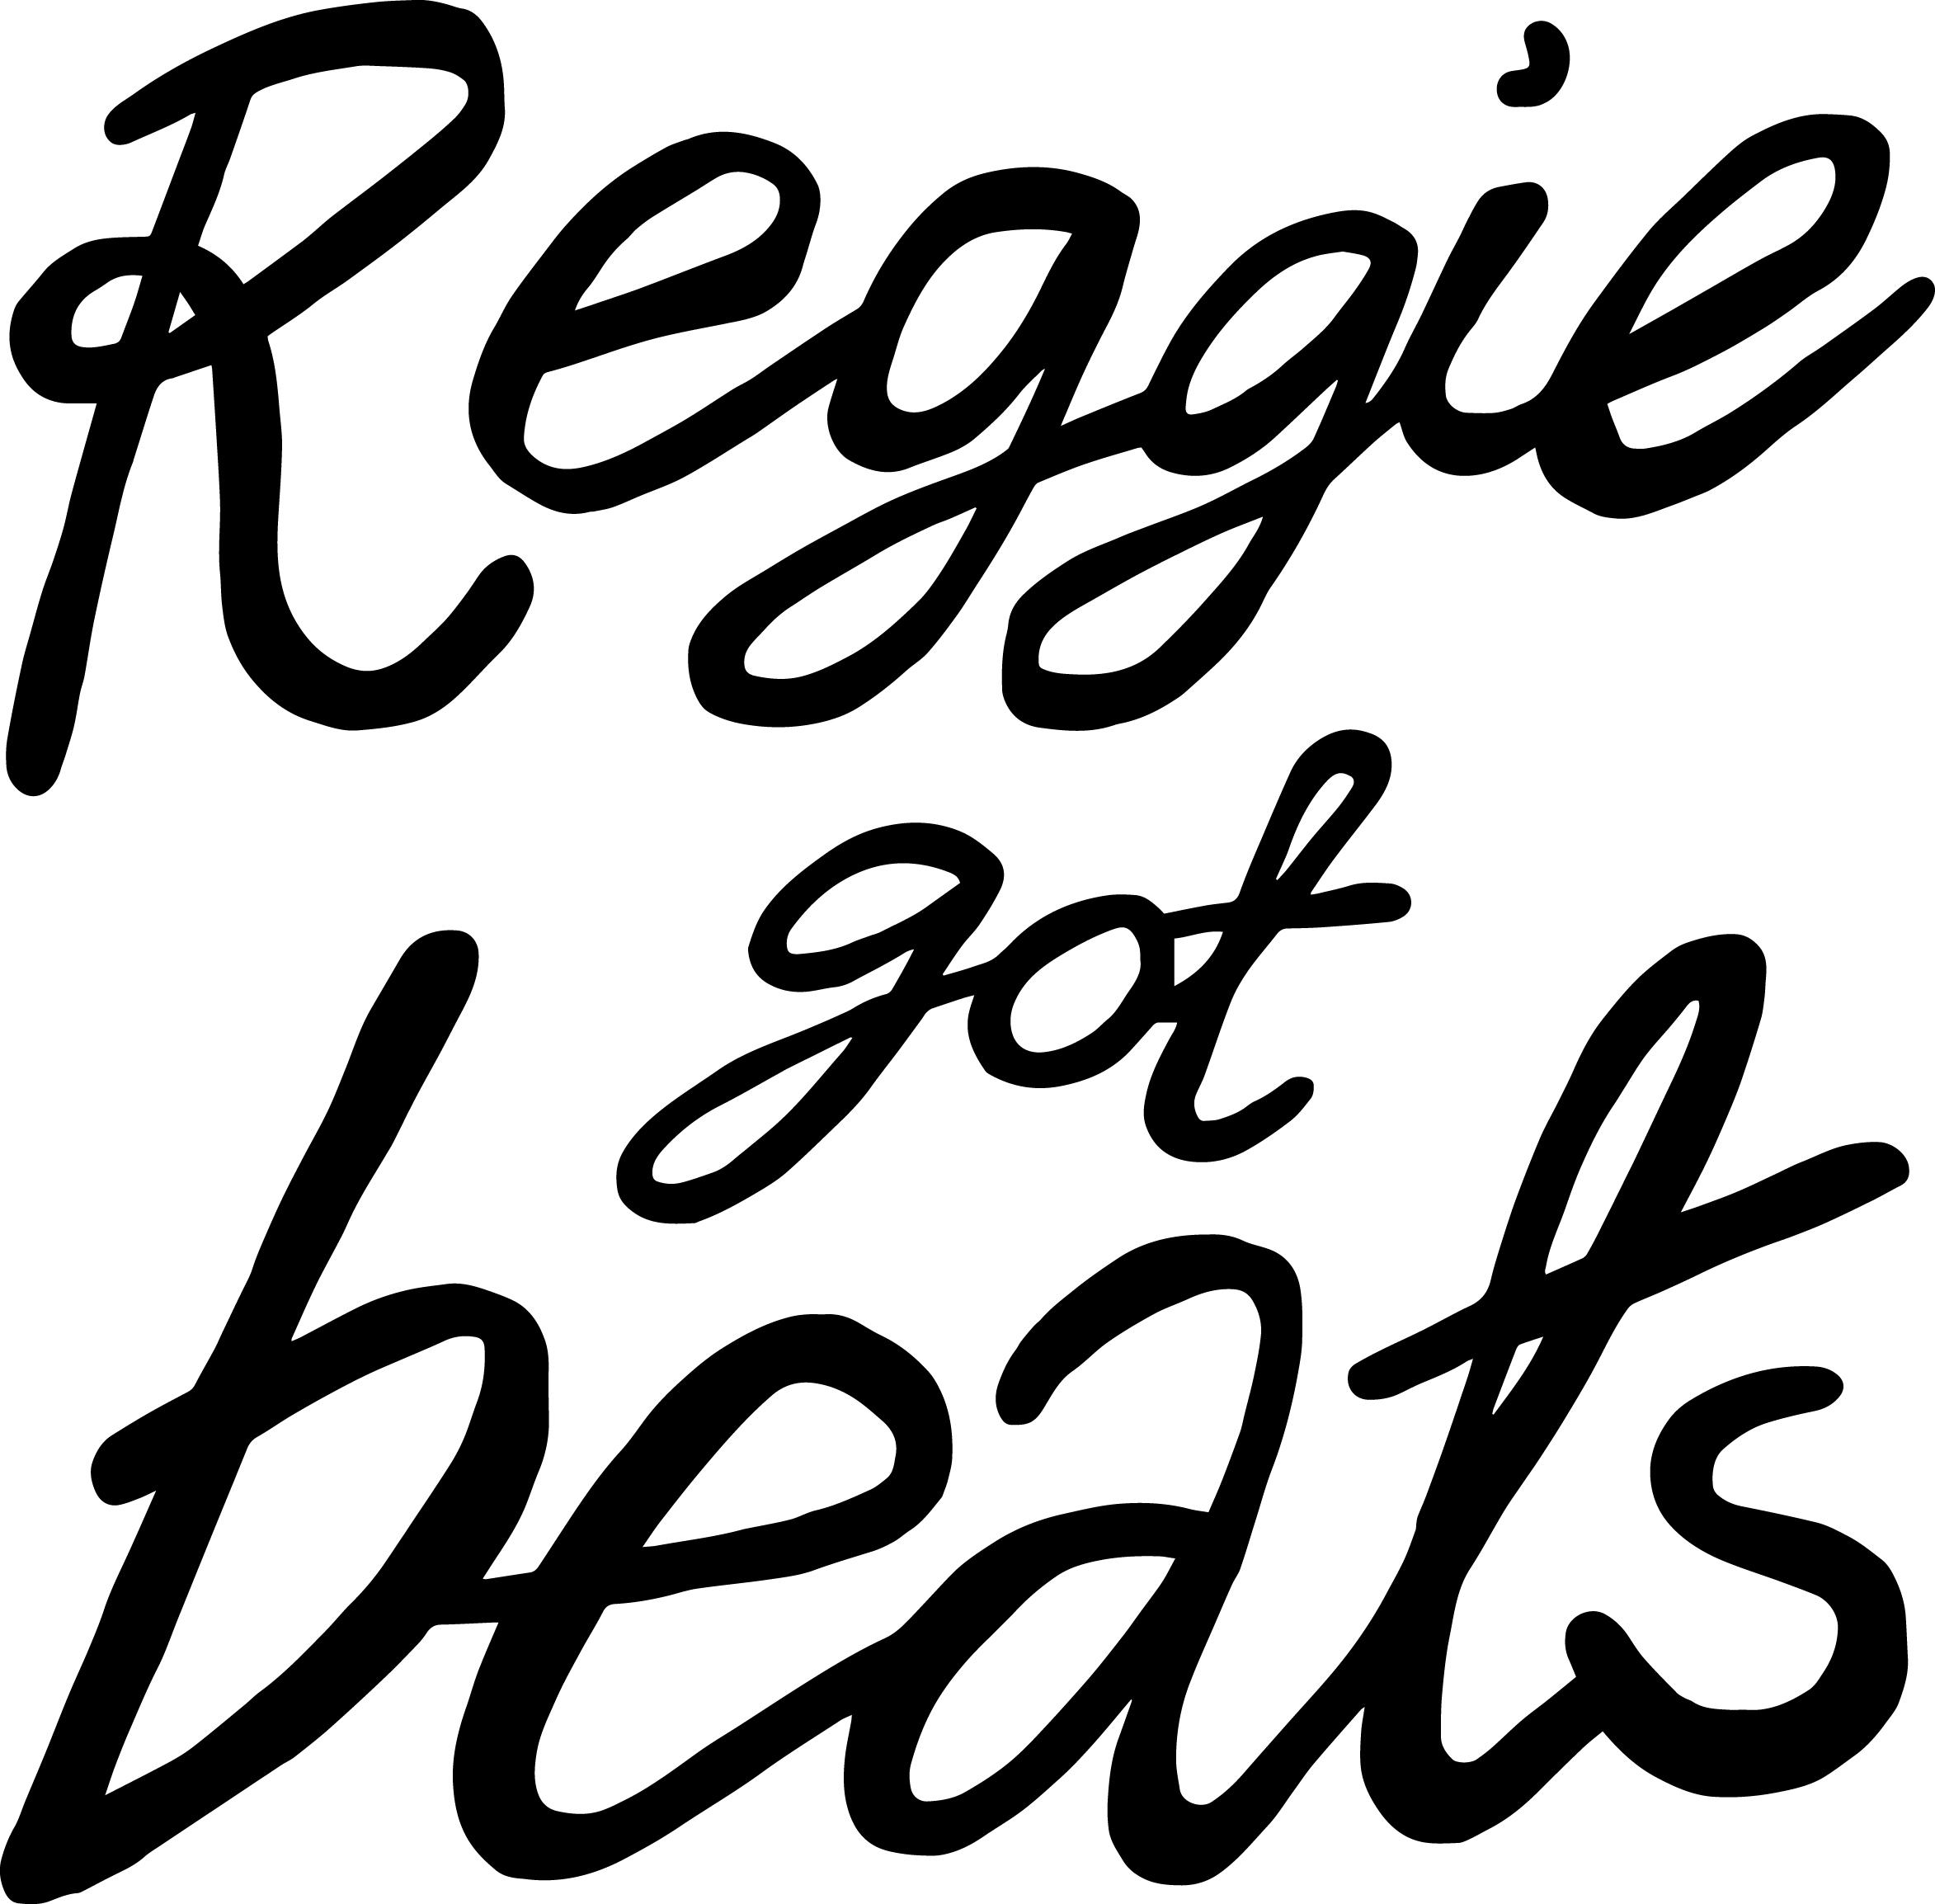 Reggie got beats